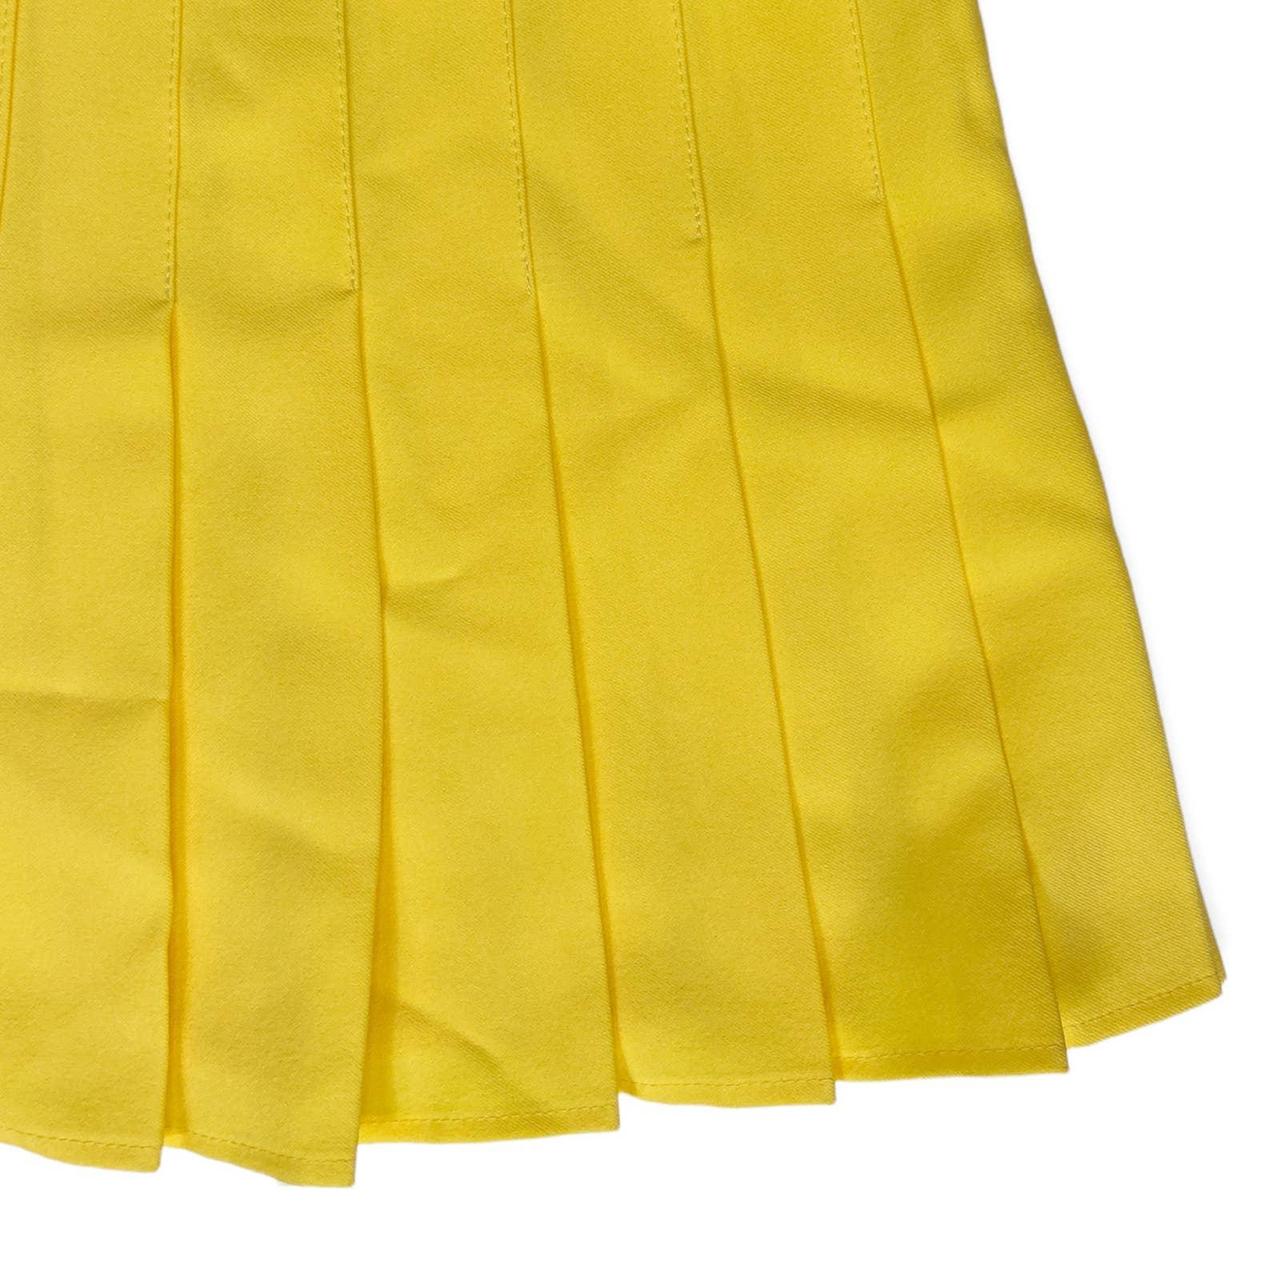 Product Image 3 - Y2K Pleated Tennis Skirt 🍒

Y2K